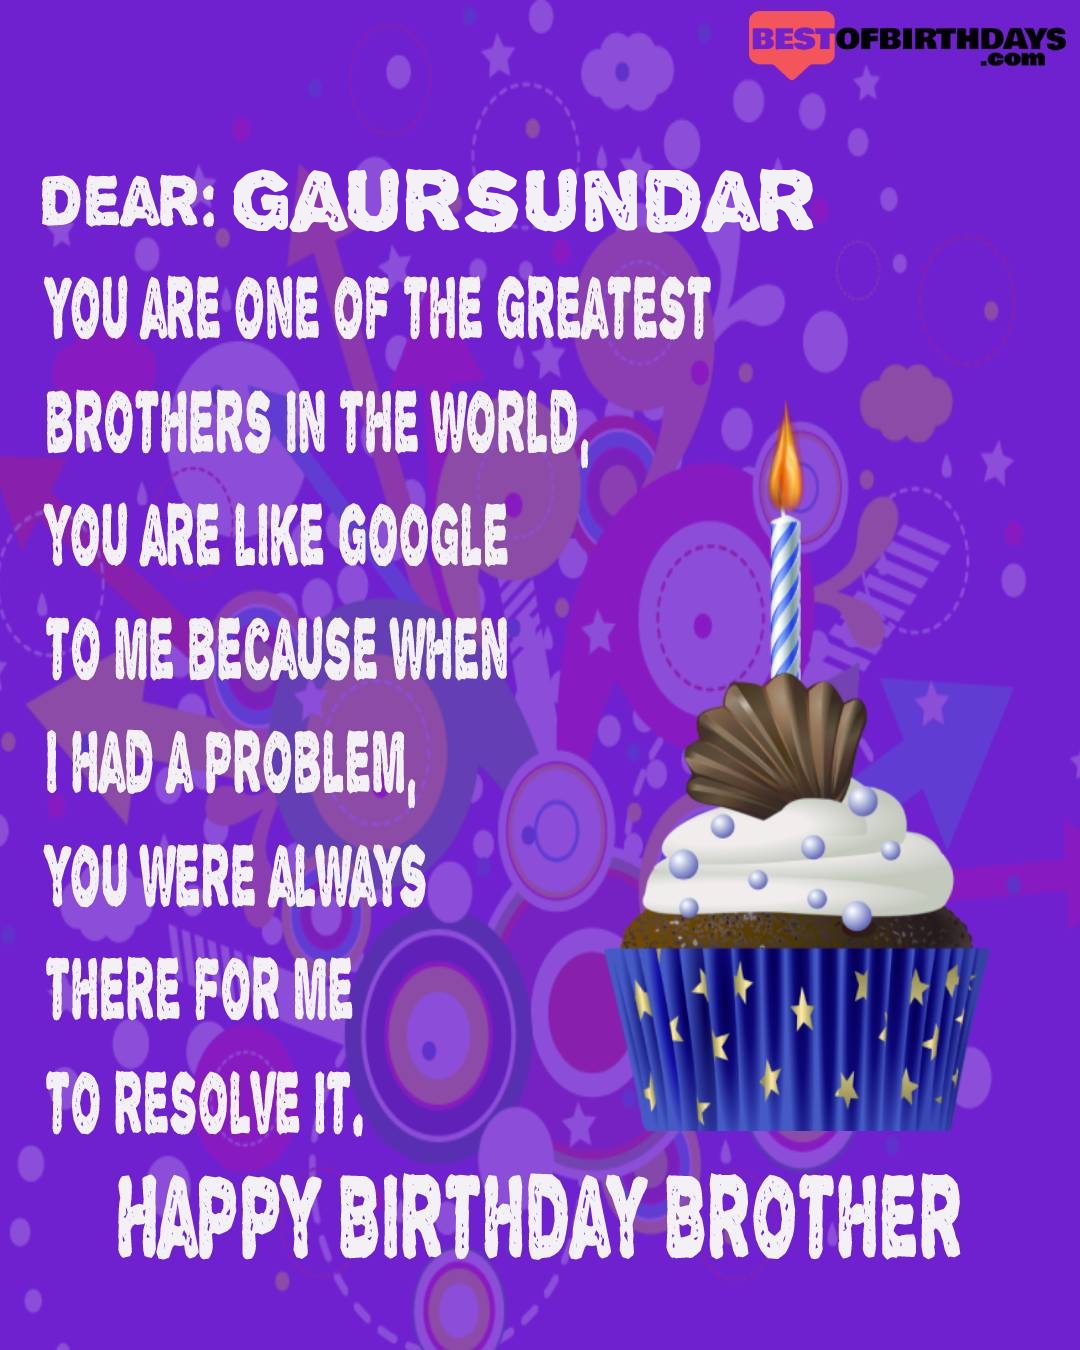 Happy birthday gaursundar bhai brother bro